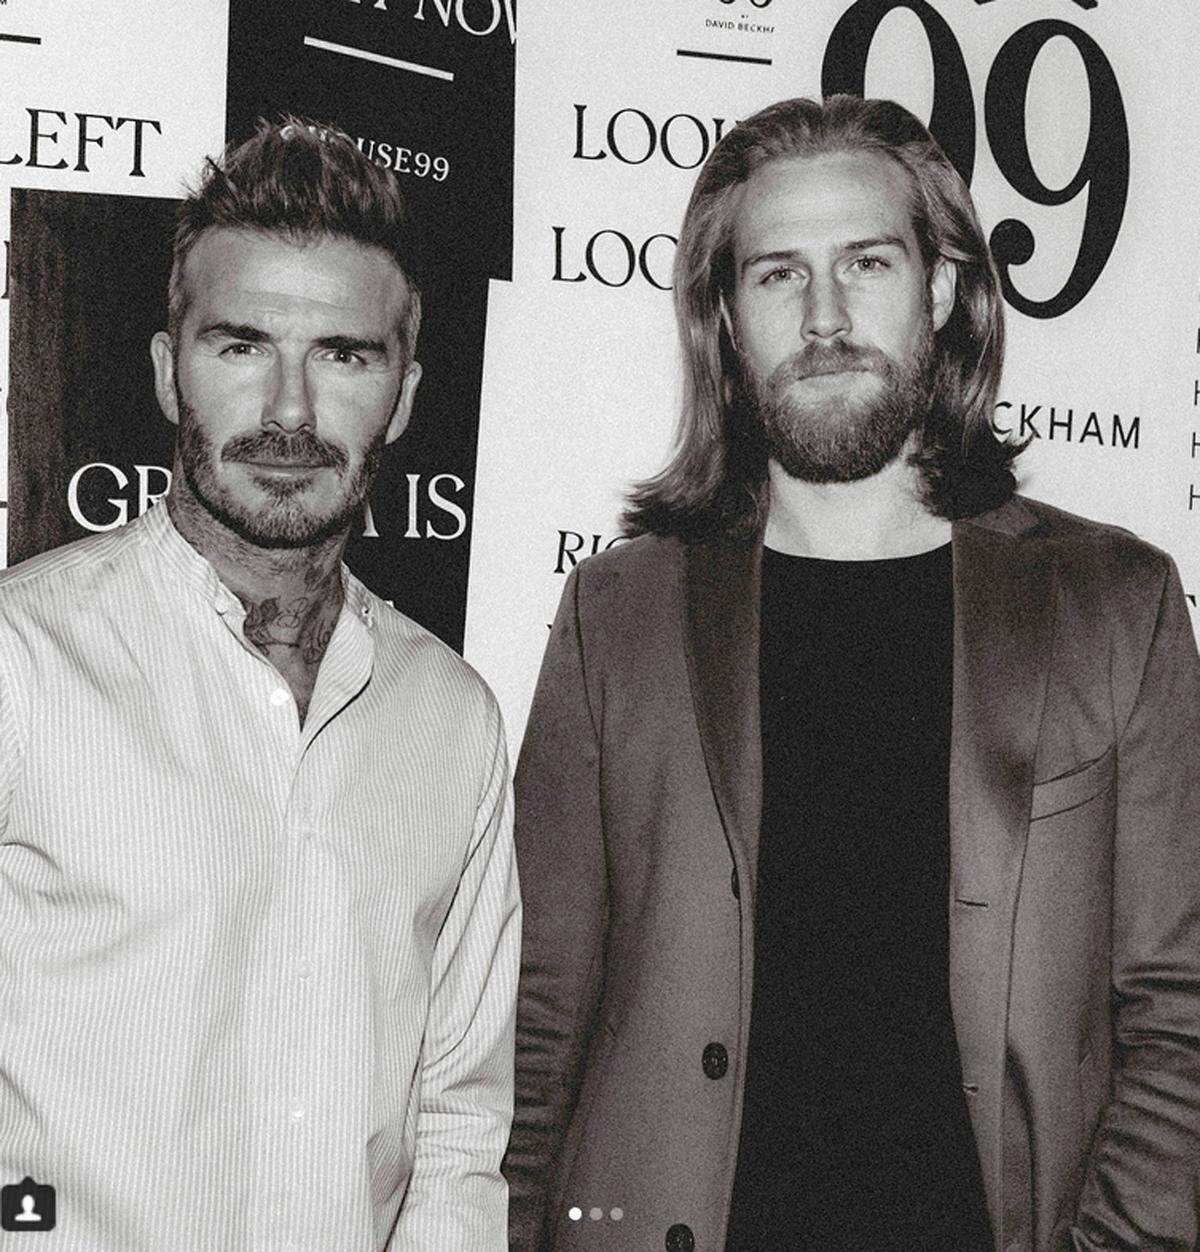 Mit Bart und längeren Haaren ist er seit einiger Zeit als Model erfolgreich. Unter anderem auch für David Beckhams neues Beautylabel House 99. Auch Instagram trug seinen Teil bei: Entdeckt wurde er von dem walisischen Designer Nathan Palmer auf der Fotosharing-Plattform.